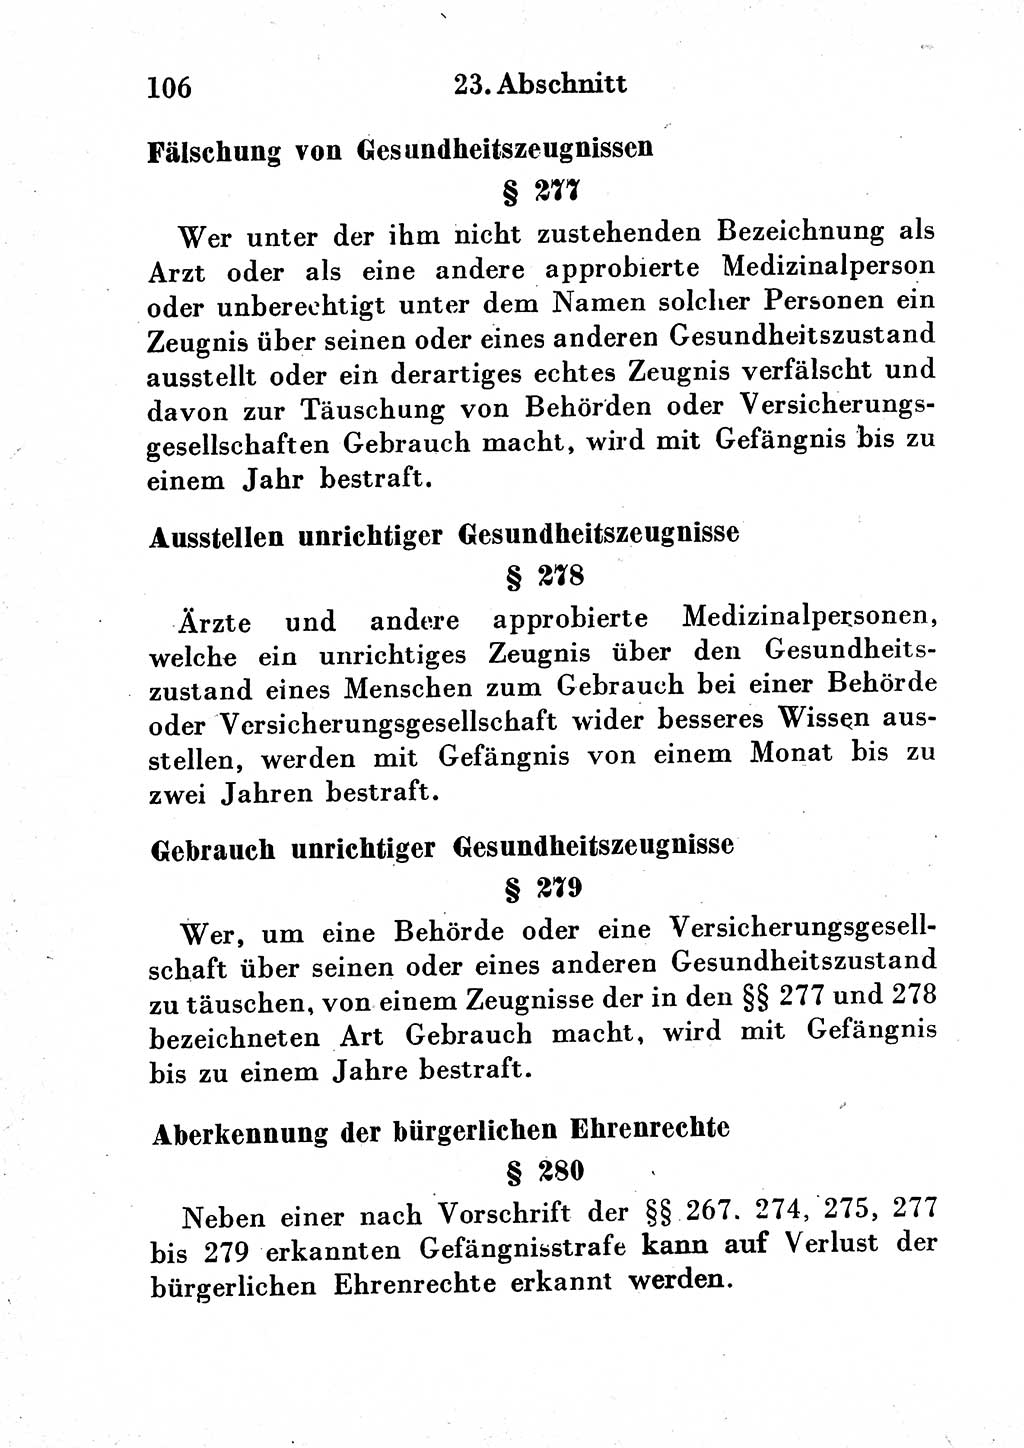 Strafgesetzbuch (StGB) und andere Strafgesetze [Deutsche Demokratische Republik (DDR)] 1954, Seite 106 (StGB Strafges. DDR 1954, S. 106)